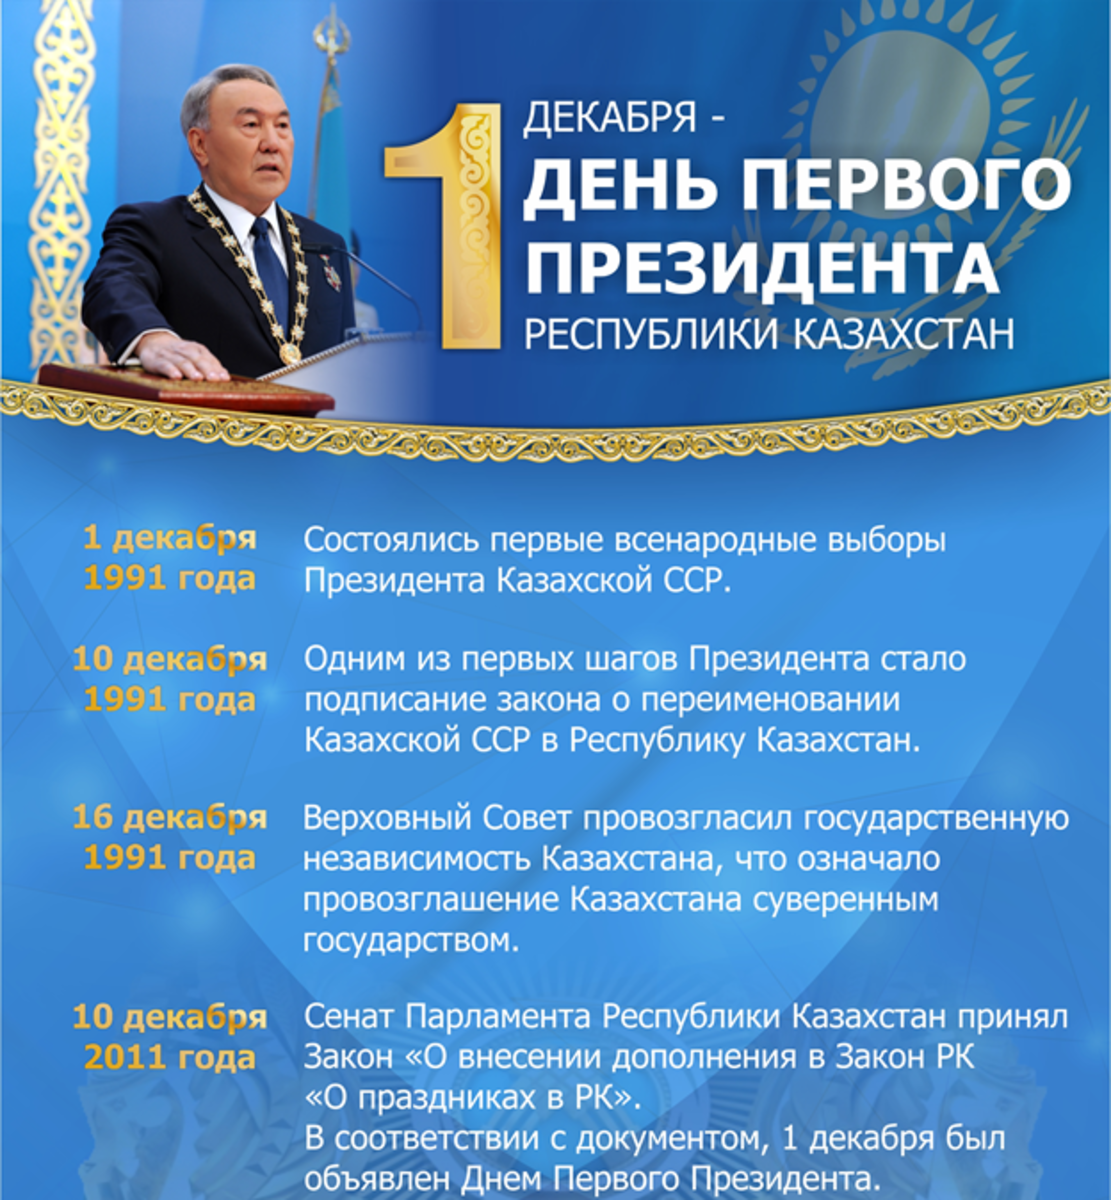 1 декабря - день Первого Президента республики Казахстан